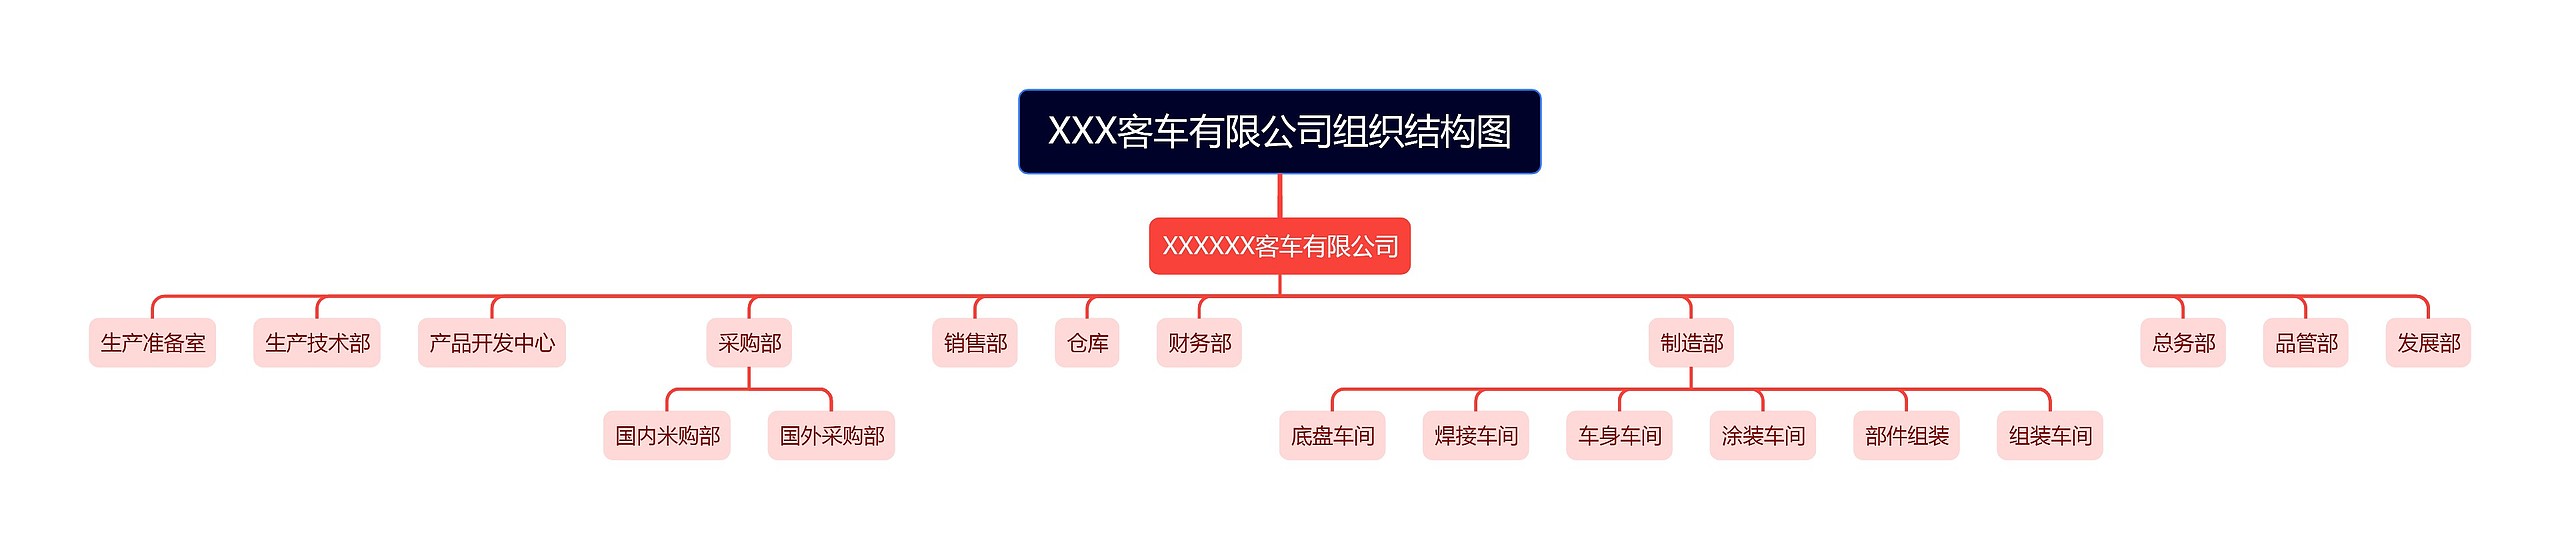 XXX客车有限公司组织结构图思维导图